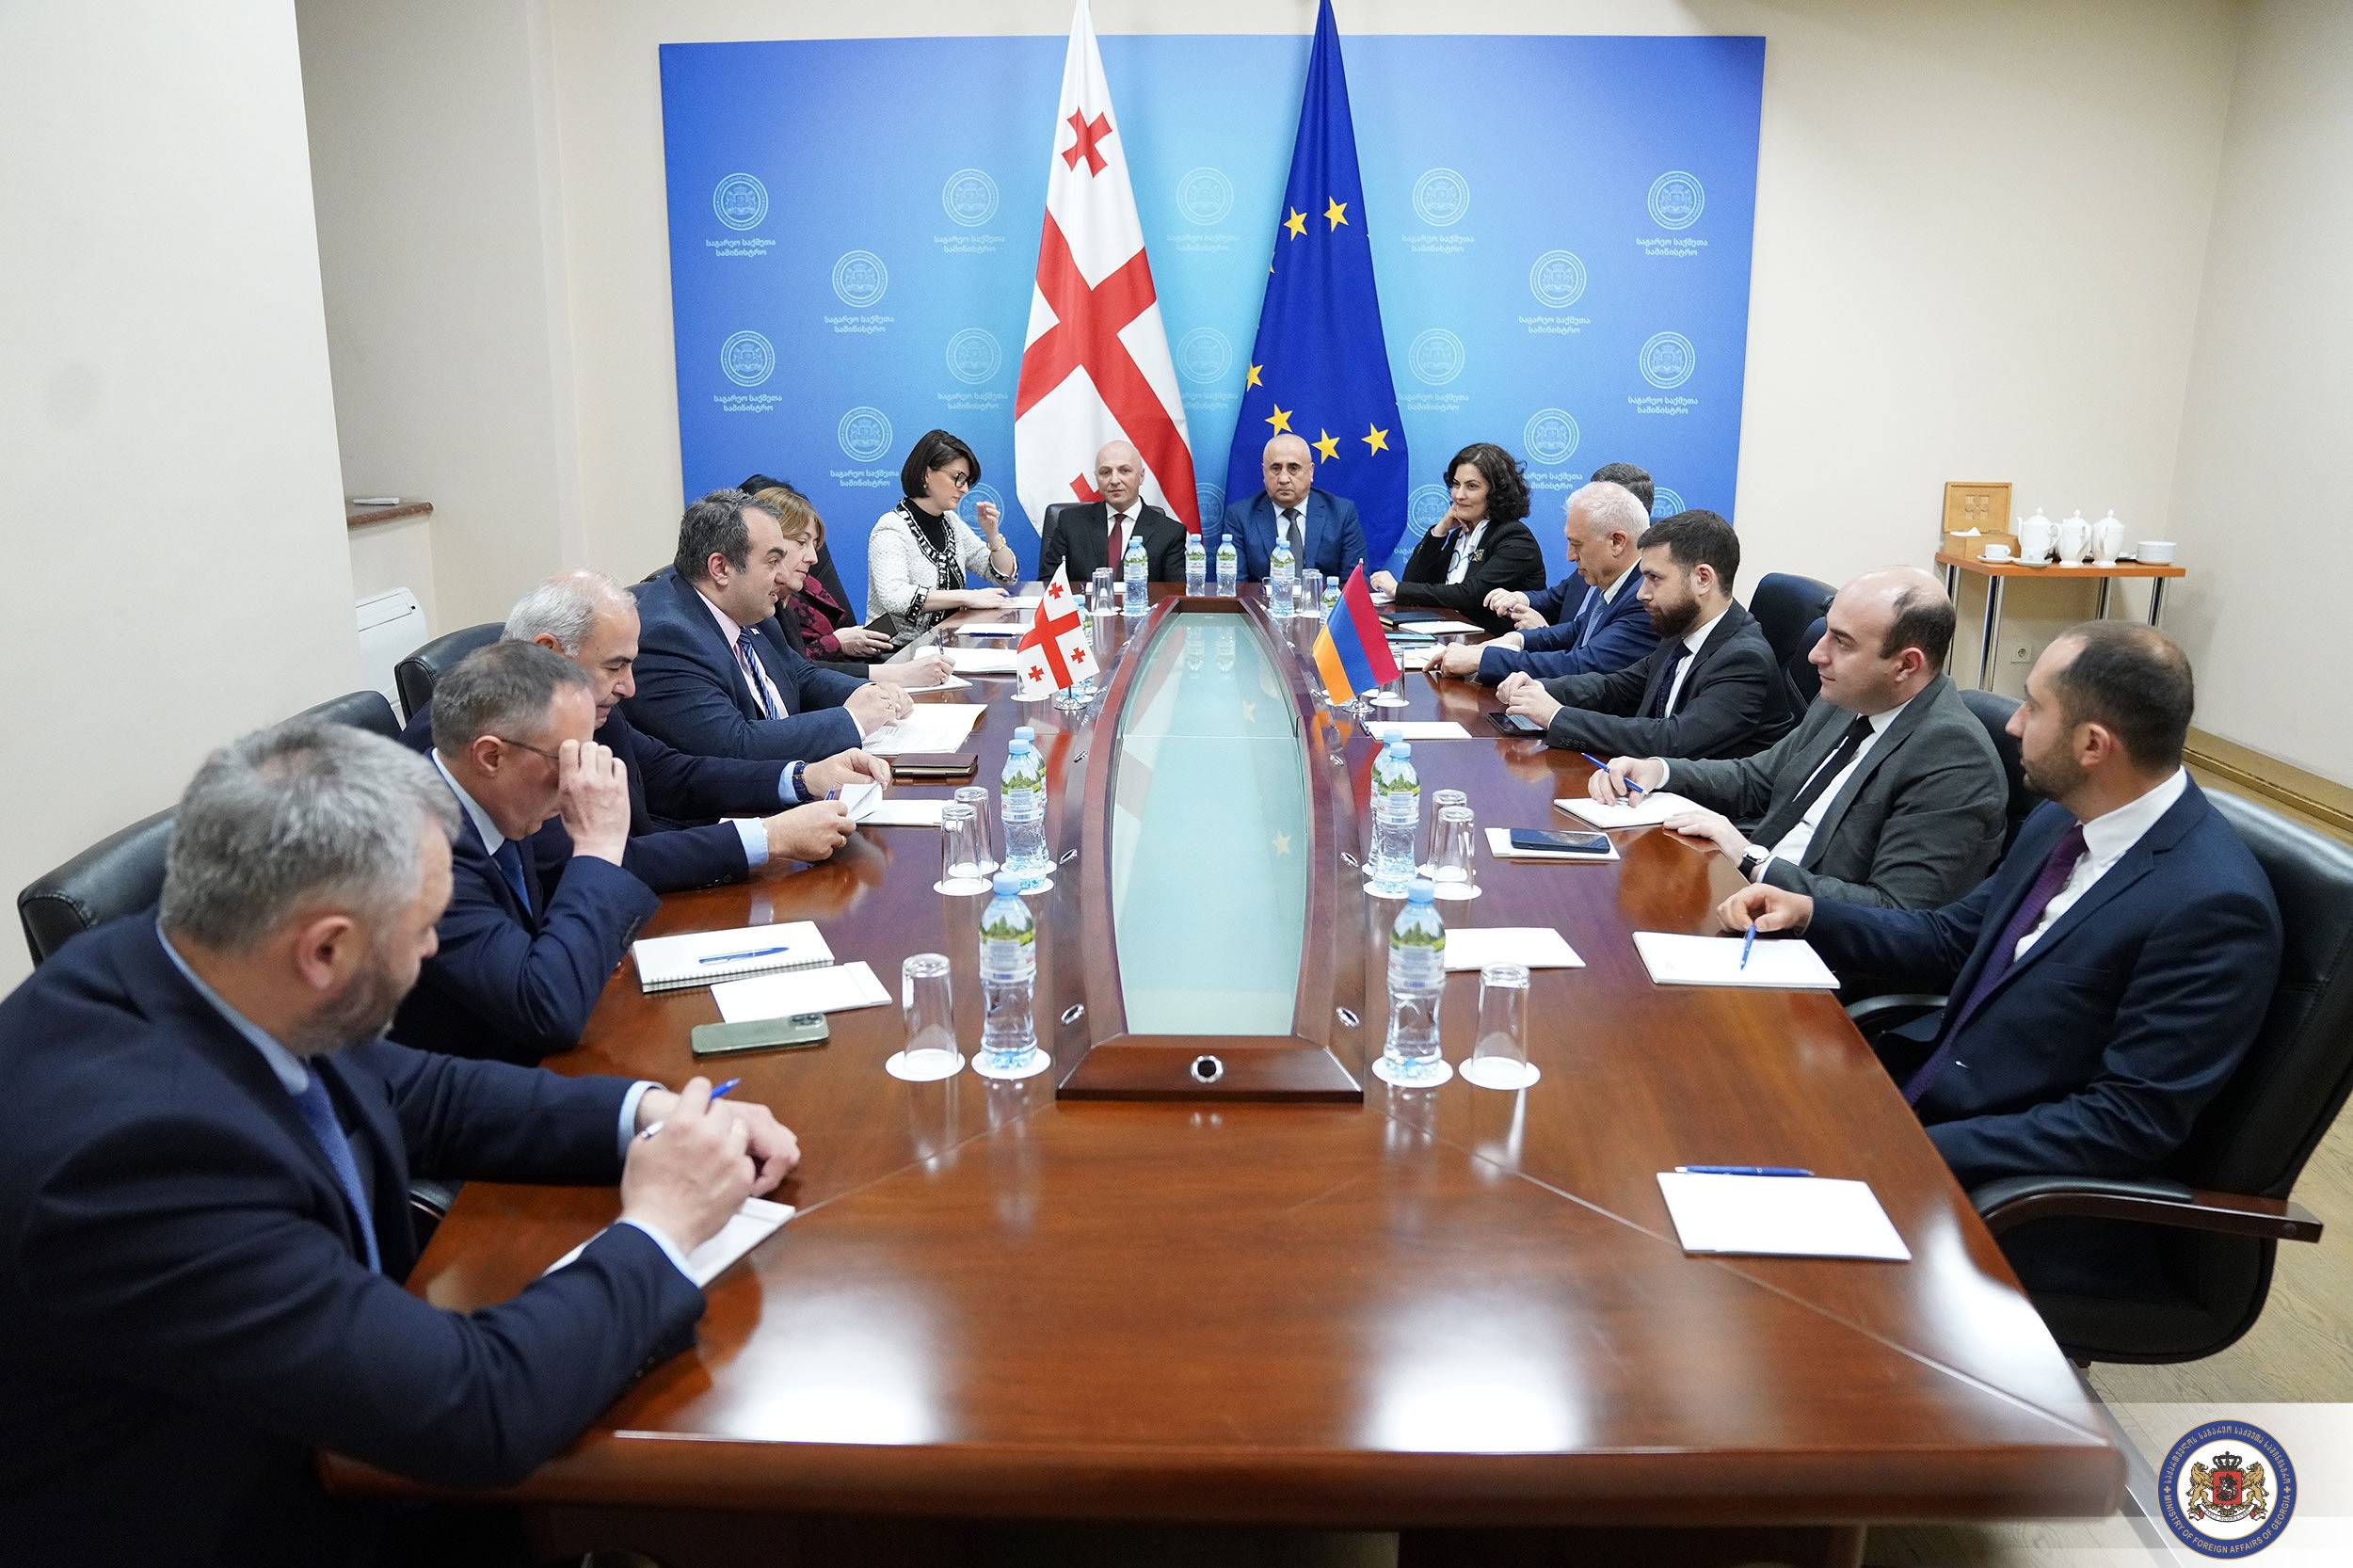 Թբիլիսիում տեղի է ունեցել Հայաստանի և Վրաստանի միջև քաղաքական խորհրդակցությունների հերթական հանդիպումը